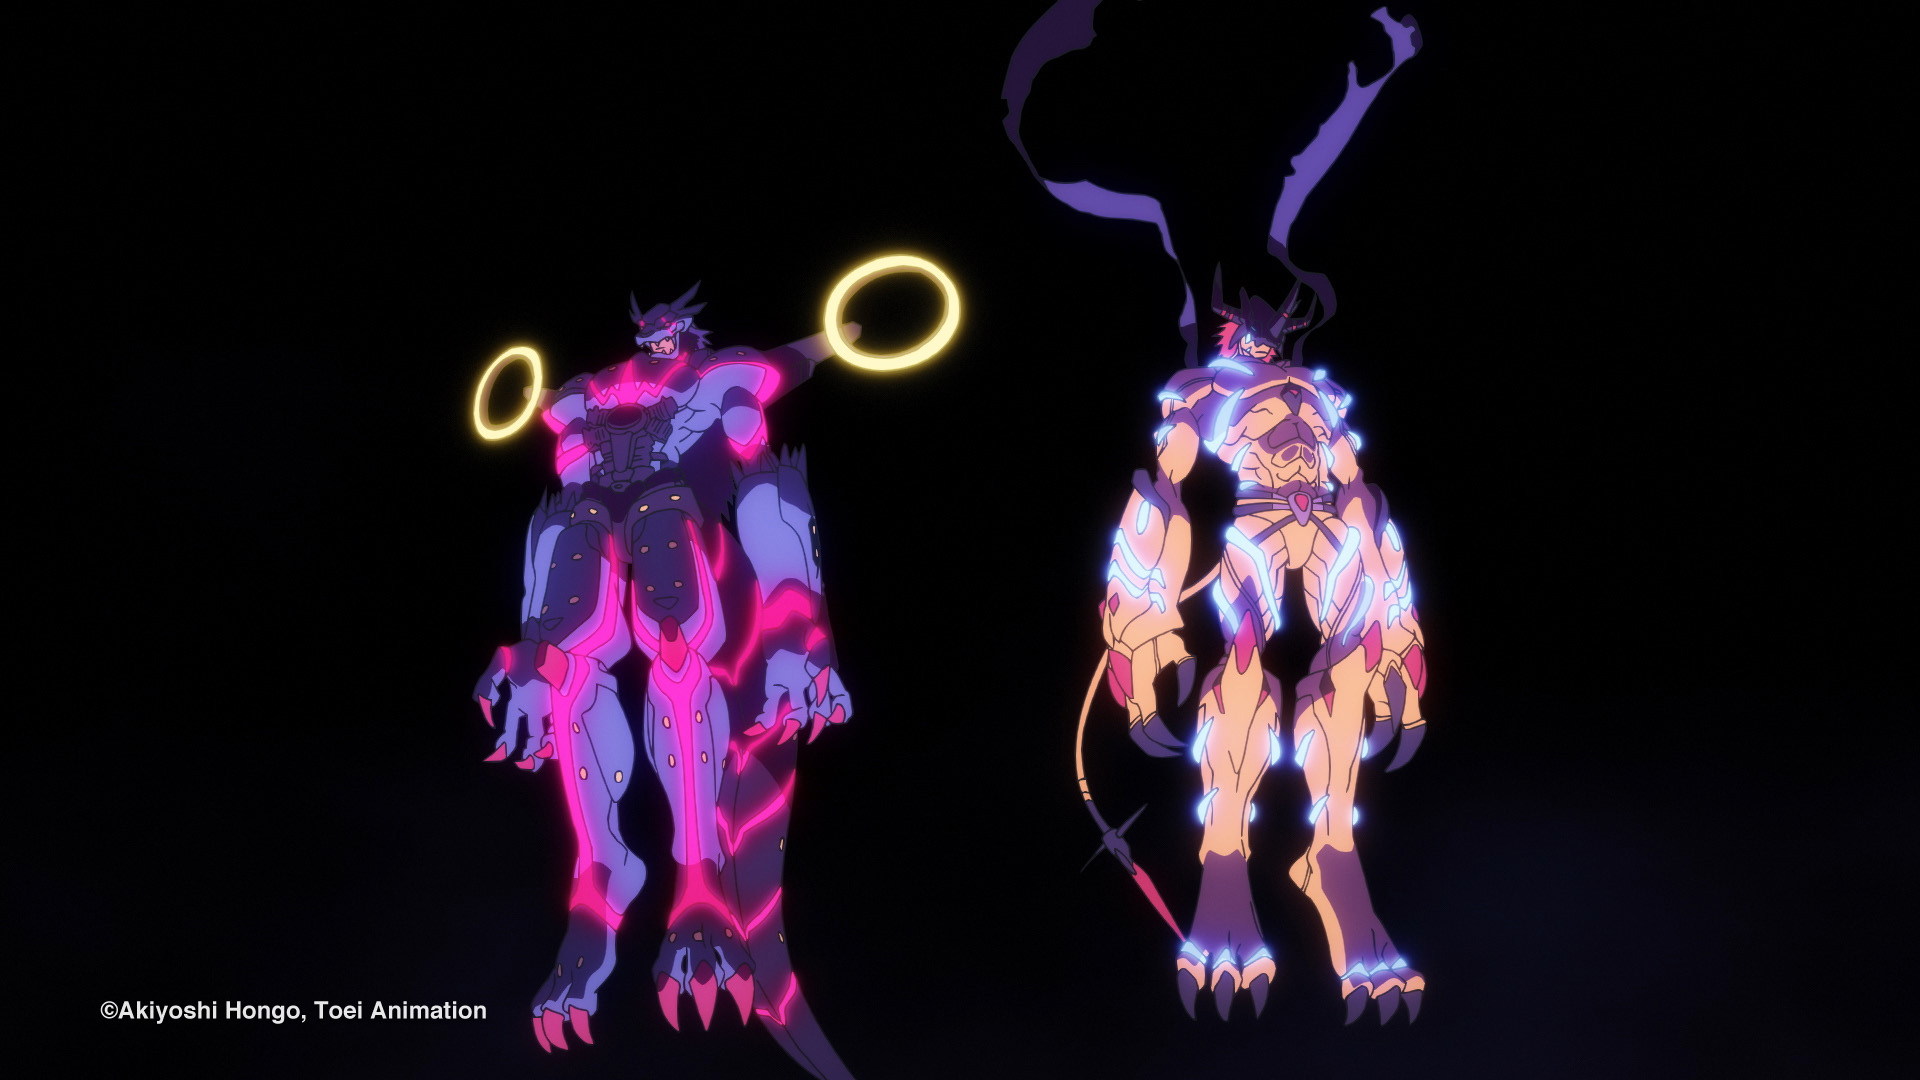 Prime Video: Digimon Adventure. Last Evolution: Kizuna